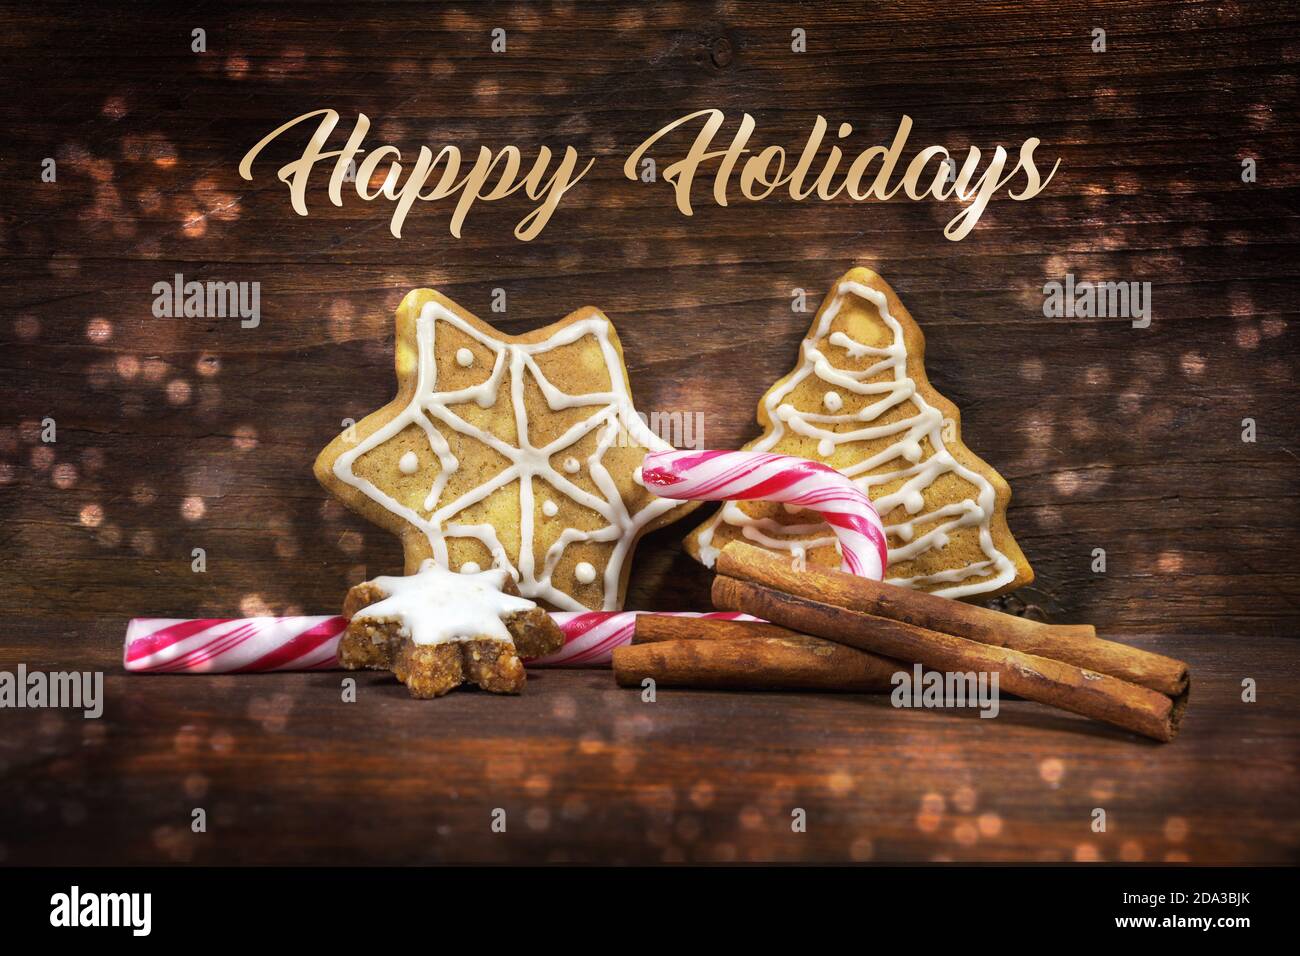 Lebkuchen, Zimtstern und Zuckerrohr, Süßigkeiten für Weihnachten und Advent, Text Happy Holidays, brauner Holzhintergrund mit Bokeh-Lichtfleck Stockfoto